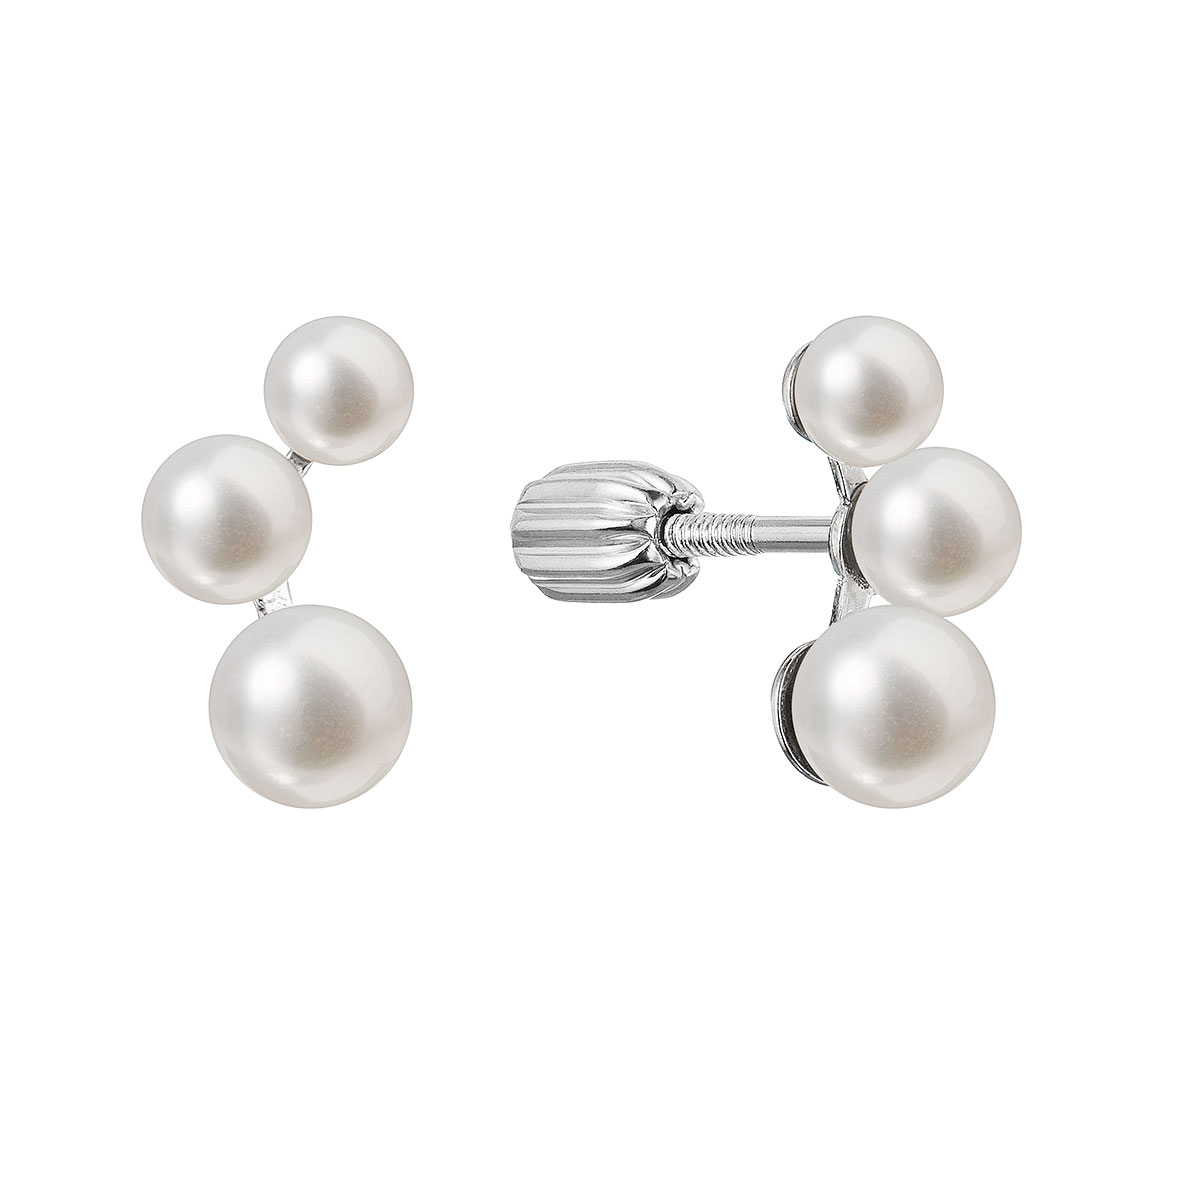 Evolution Group Stříbrné náušnice pecky s třemi bílými říčními perlami 21101.1B